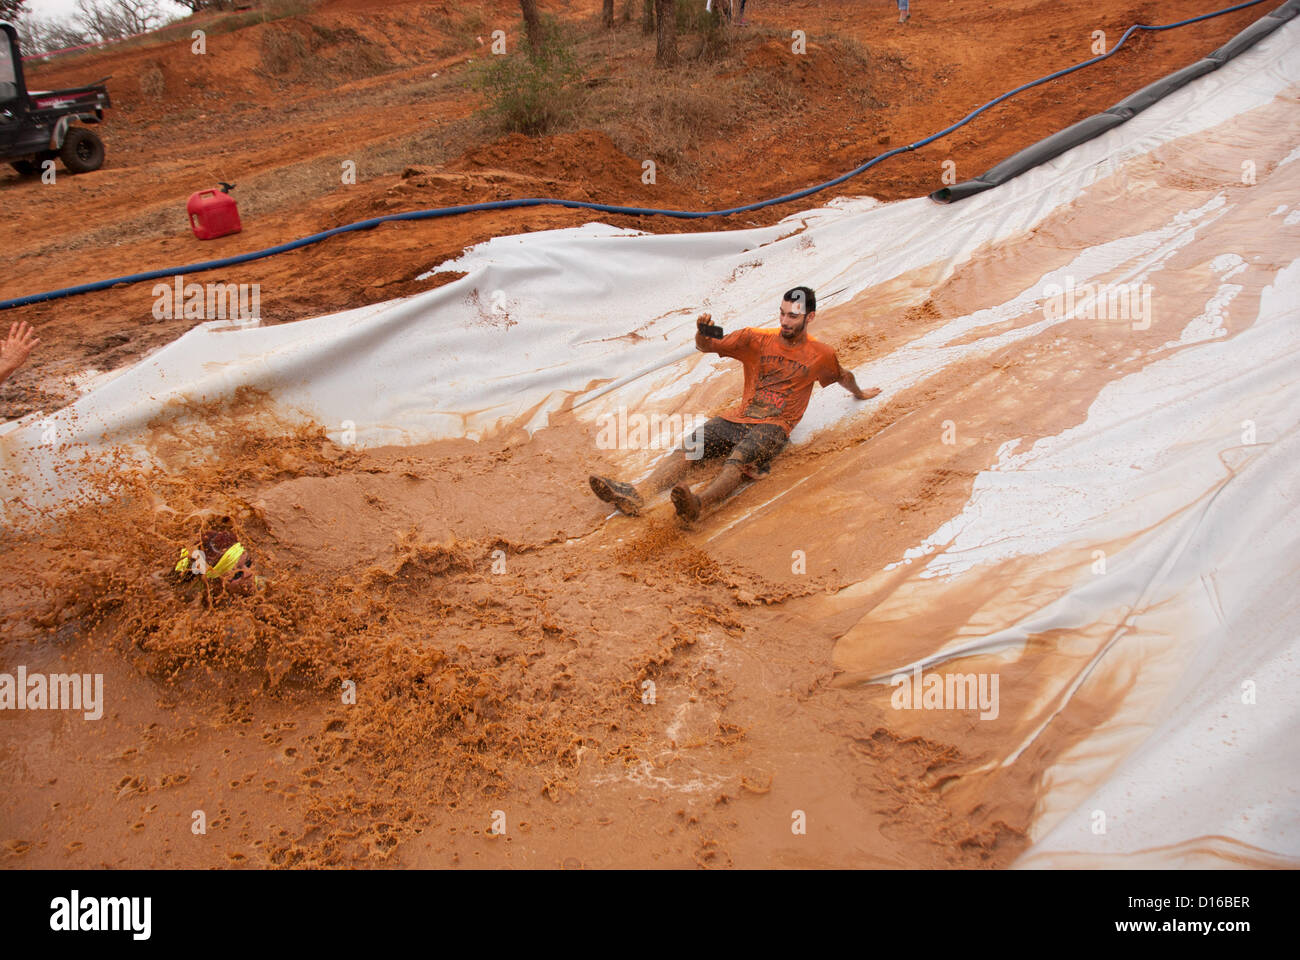 8 décembre 2012 San Antonio, Texas, USA - Les gens glissent sur un obstacle connu sous le nom de 'Skid' pendant le Gladiator Rock'n courir à San Antonio. Banque D'Images